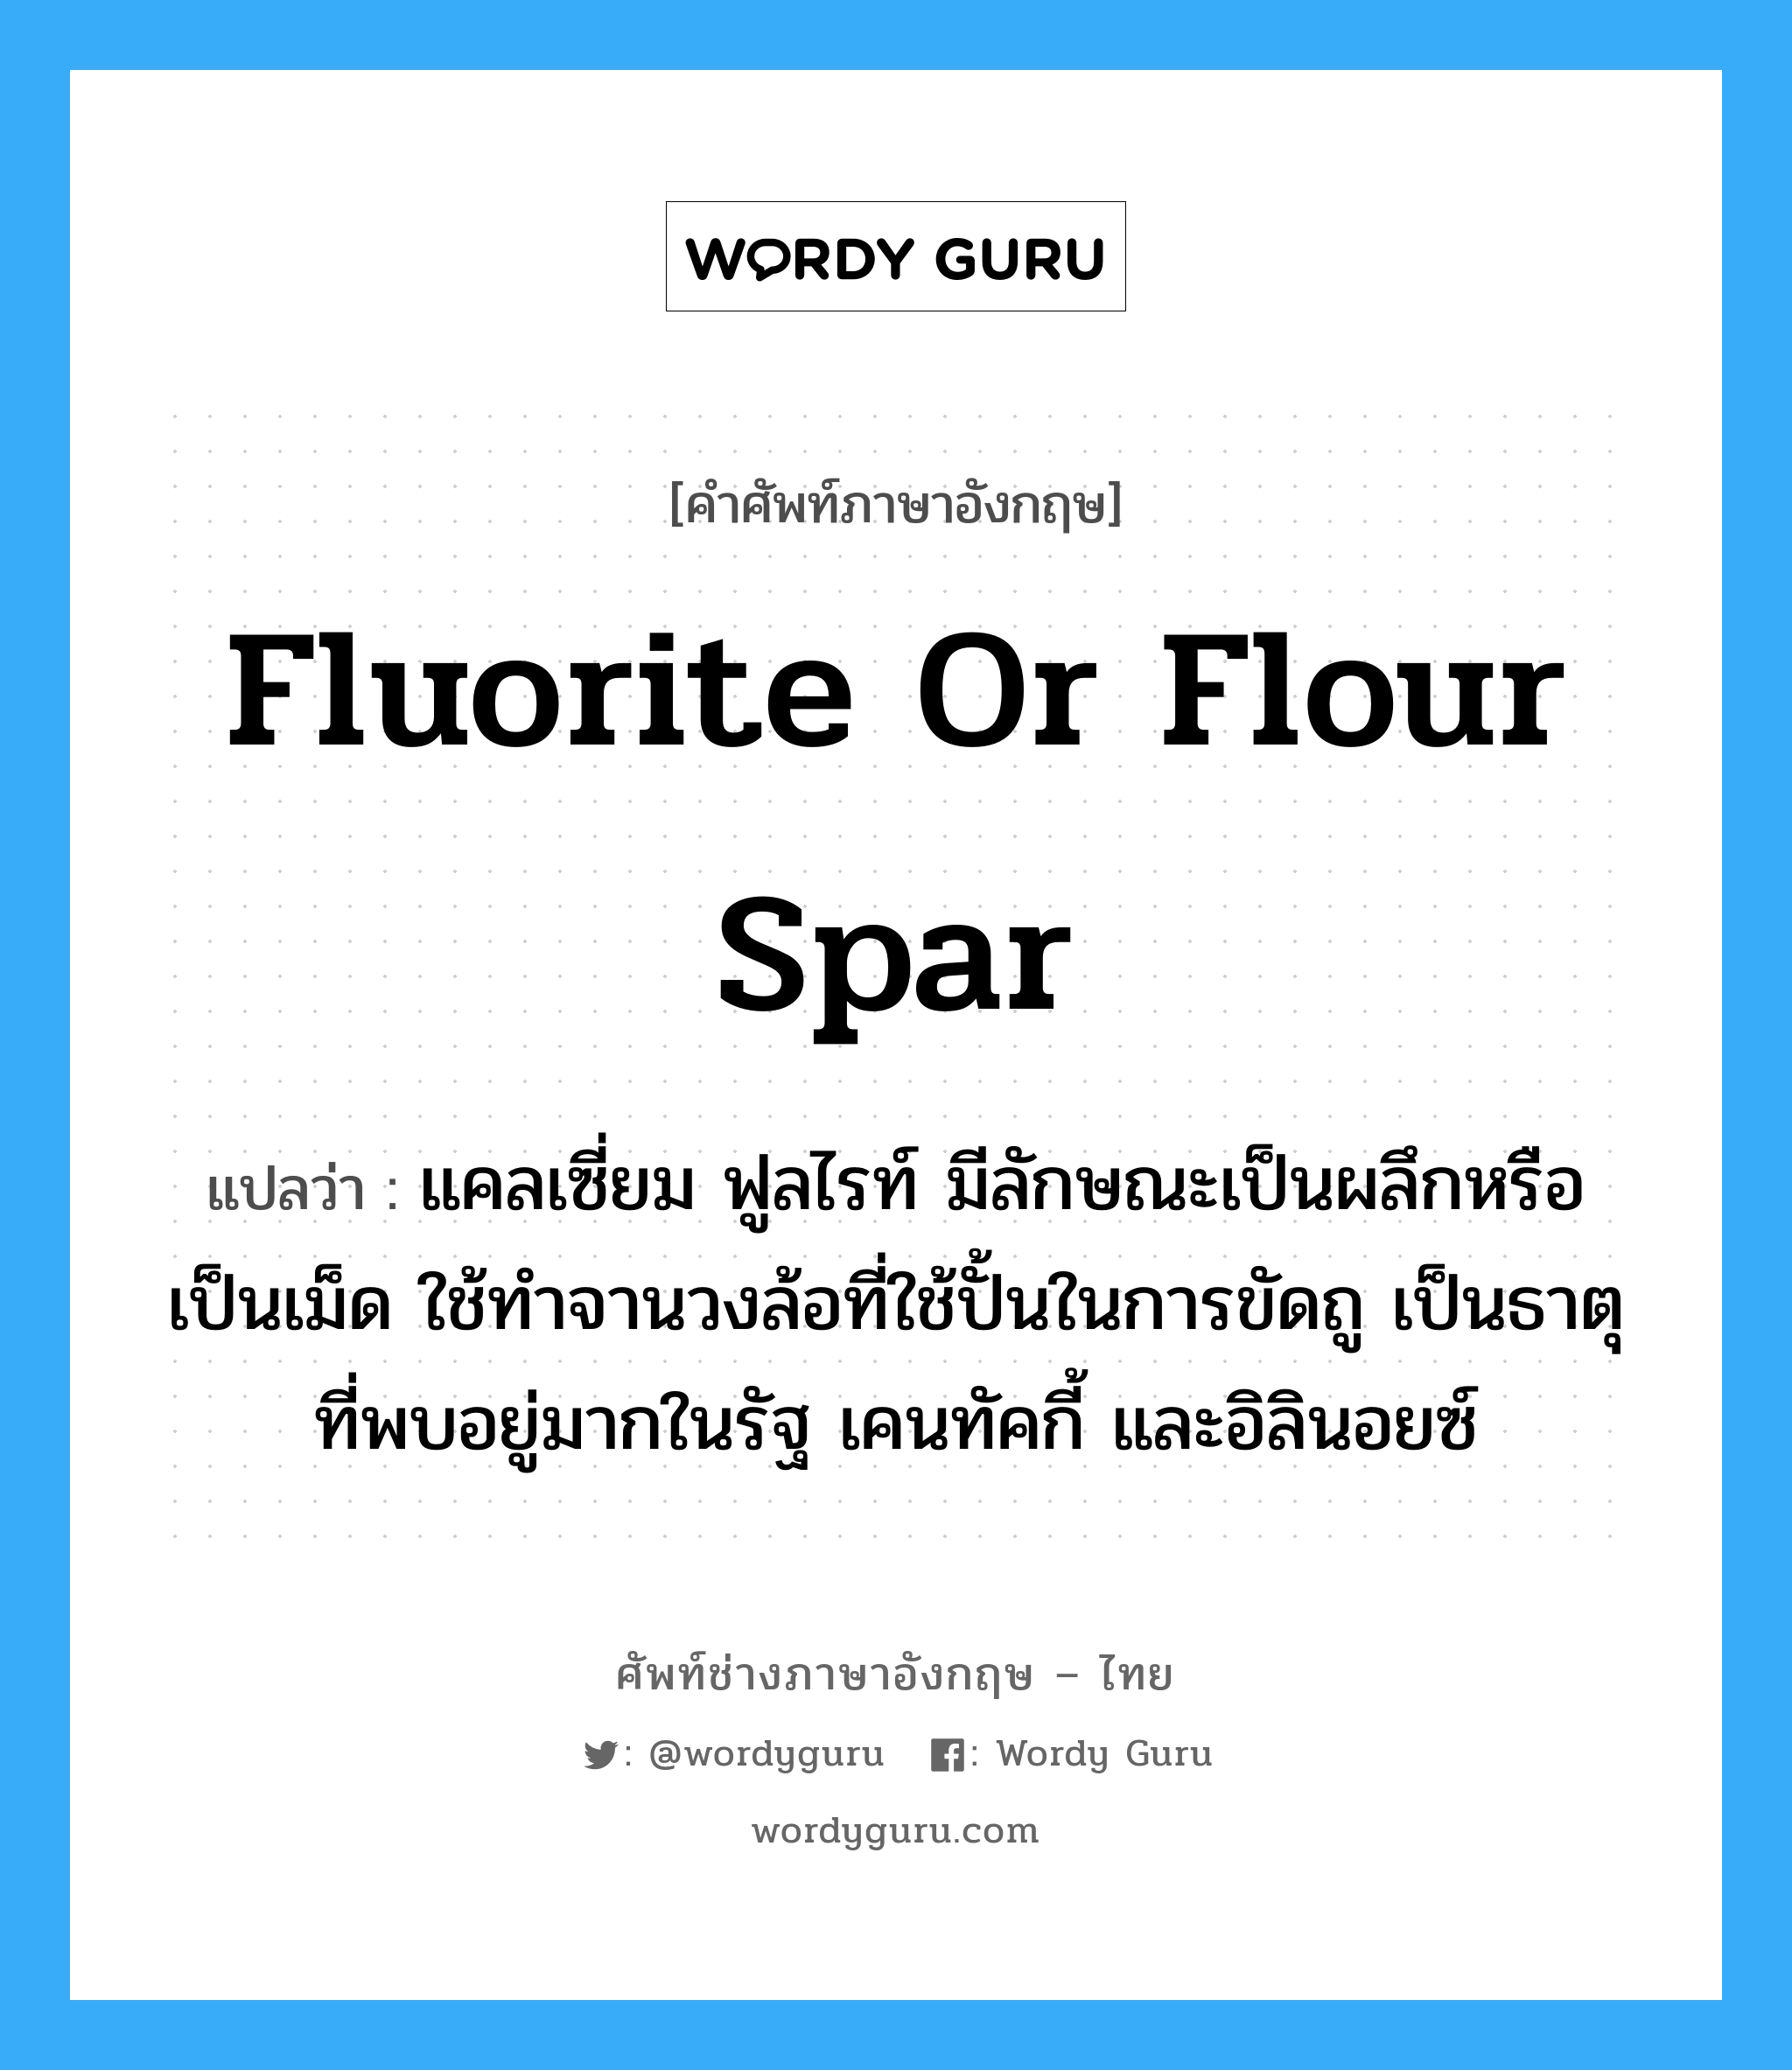 fluorite or flour spar แปลว่า?, คำศัพท์ช่างภาษาอังกฤษ - ไทย fluorite or flour spar คำศัพท์ภาษาอังกฤษ fluorite or flour spar แปลว่า แคลเซี่ยม ฟูลไรท์ มีลักษณะเป็นผลึกหรือเป็นเม็ด ใช้ทำจานวงล้อที่ใช้ปั้นในการขัดถู เป็นธาตุที่พบอยู่มากในรัฐ เคนทัคกี้ และอิลินอยซ์